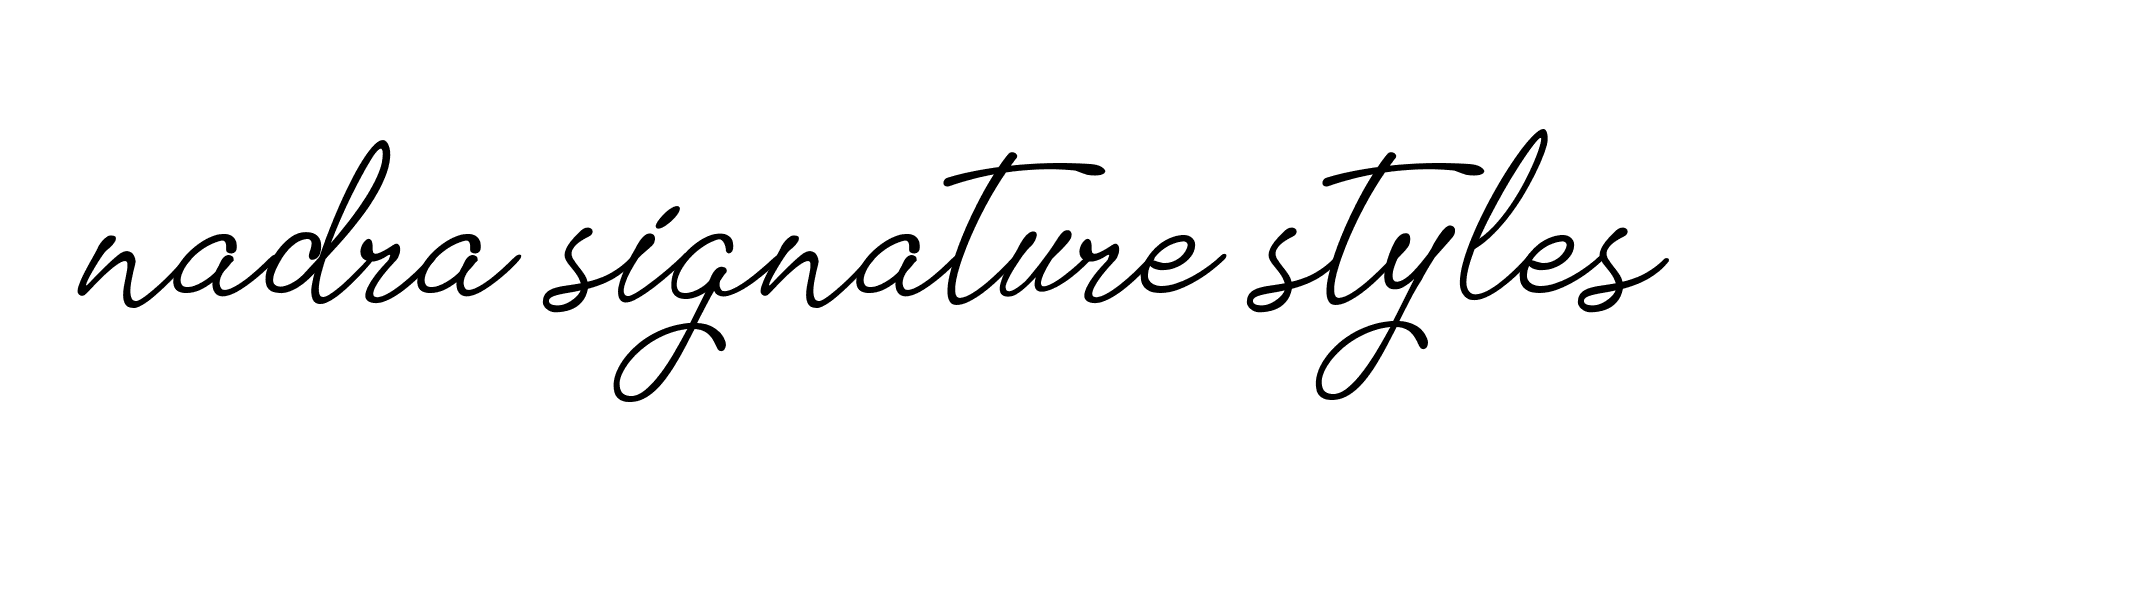 96+ Nadra-signature-styles Name Signature Style Ideas | Amazing Online ...